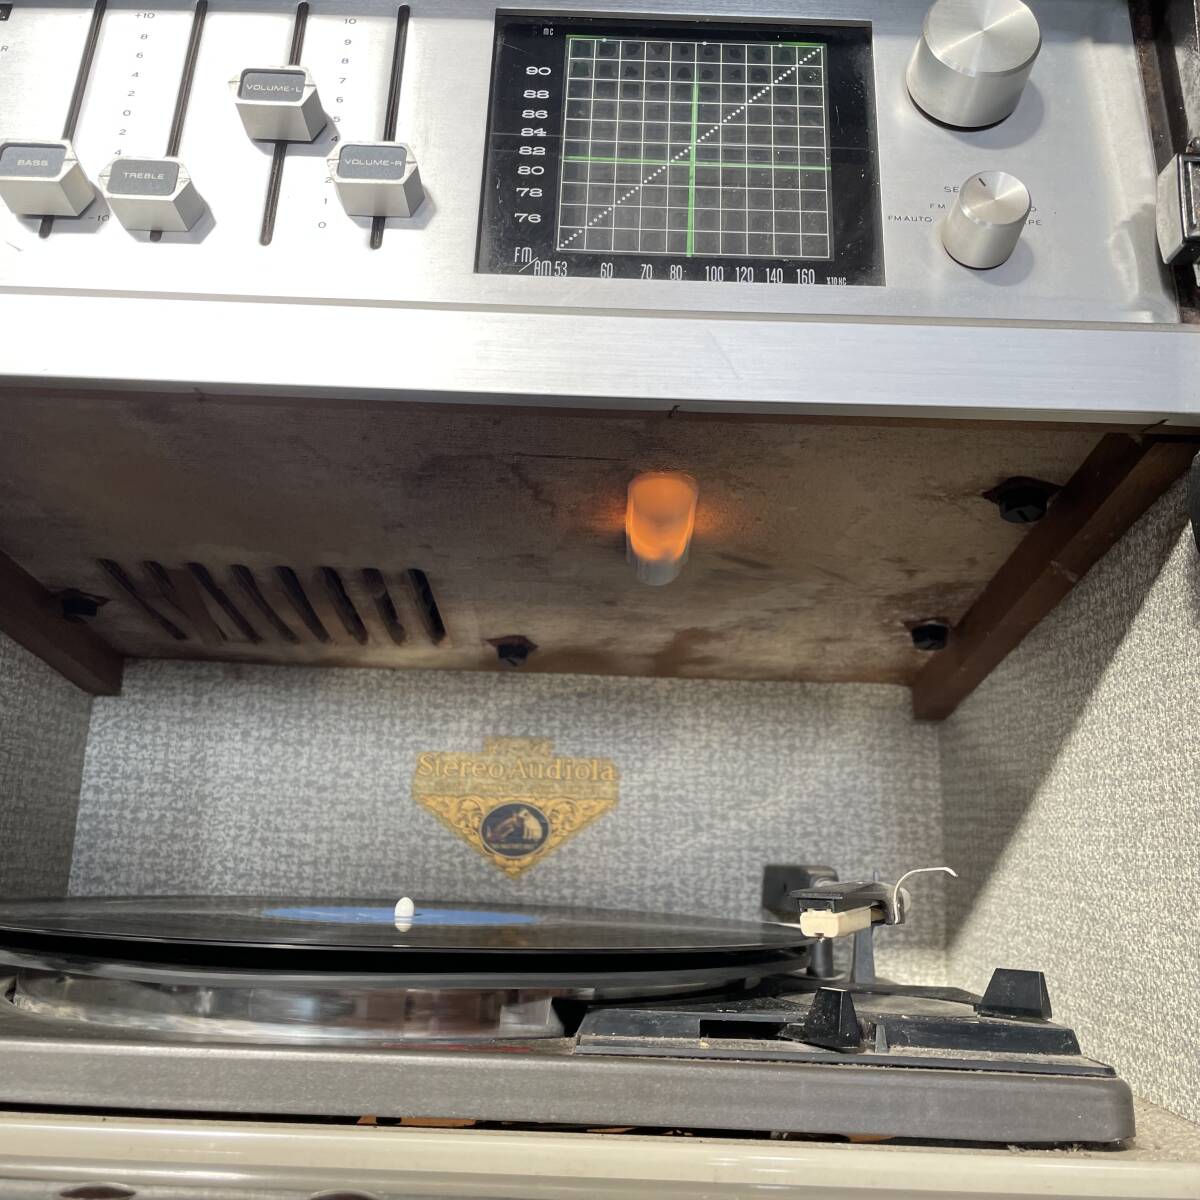  вакуумная трубка радио #Victor запись плеер STL-690MB Hi-Fi Stereo Audiola / запись AM FM простой проверка settled Junk # самовывоз ограничение! Fukui префектура Fukui город 